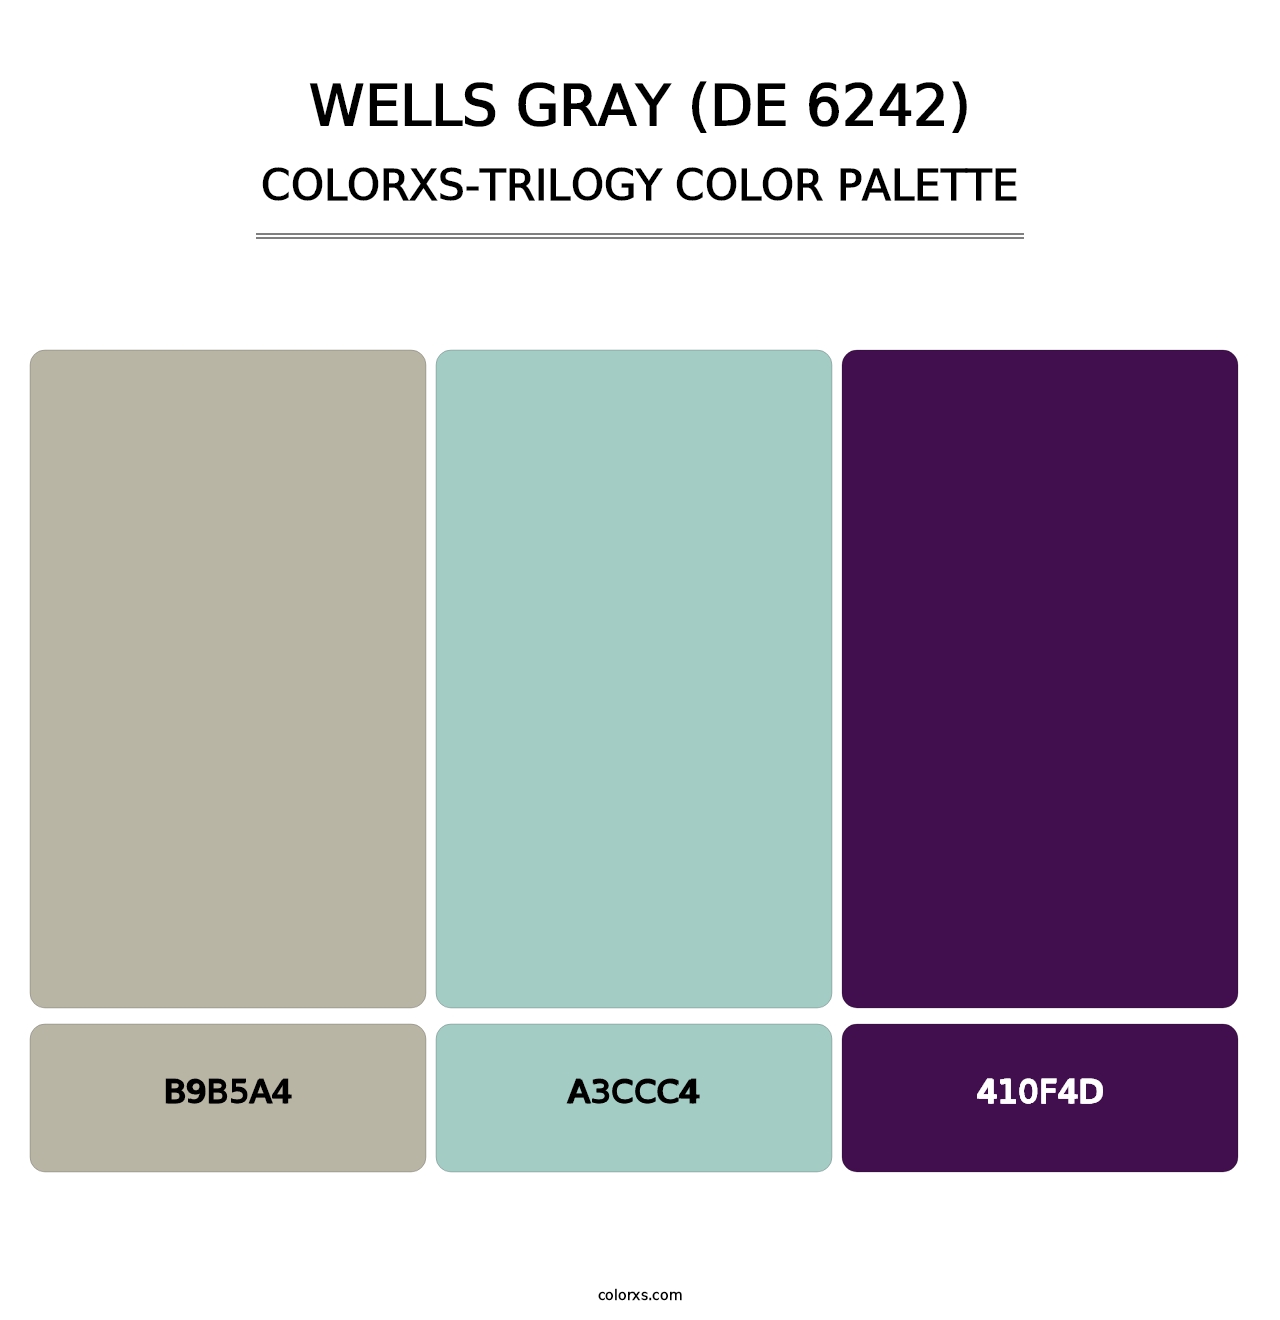 Wells Gray (DE 6242) - Colorxs Trilogy Palette